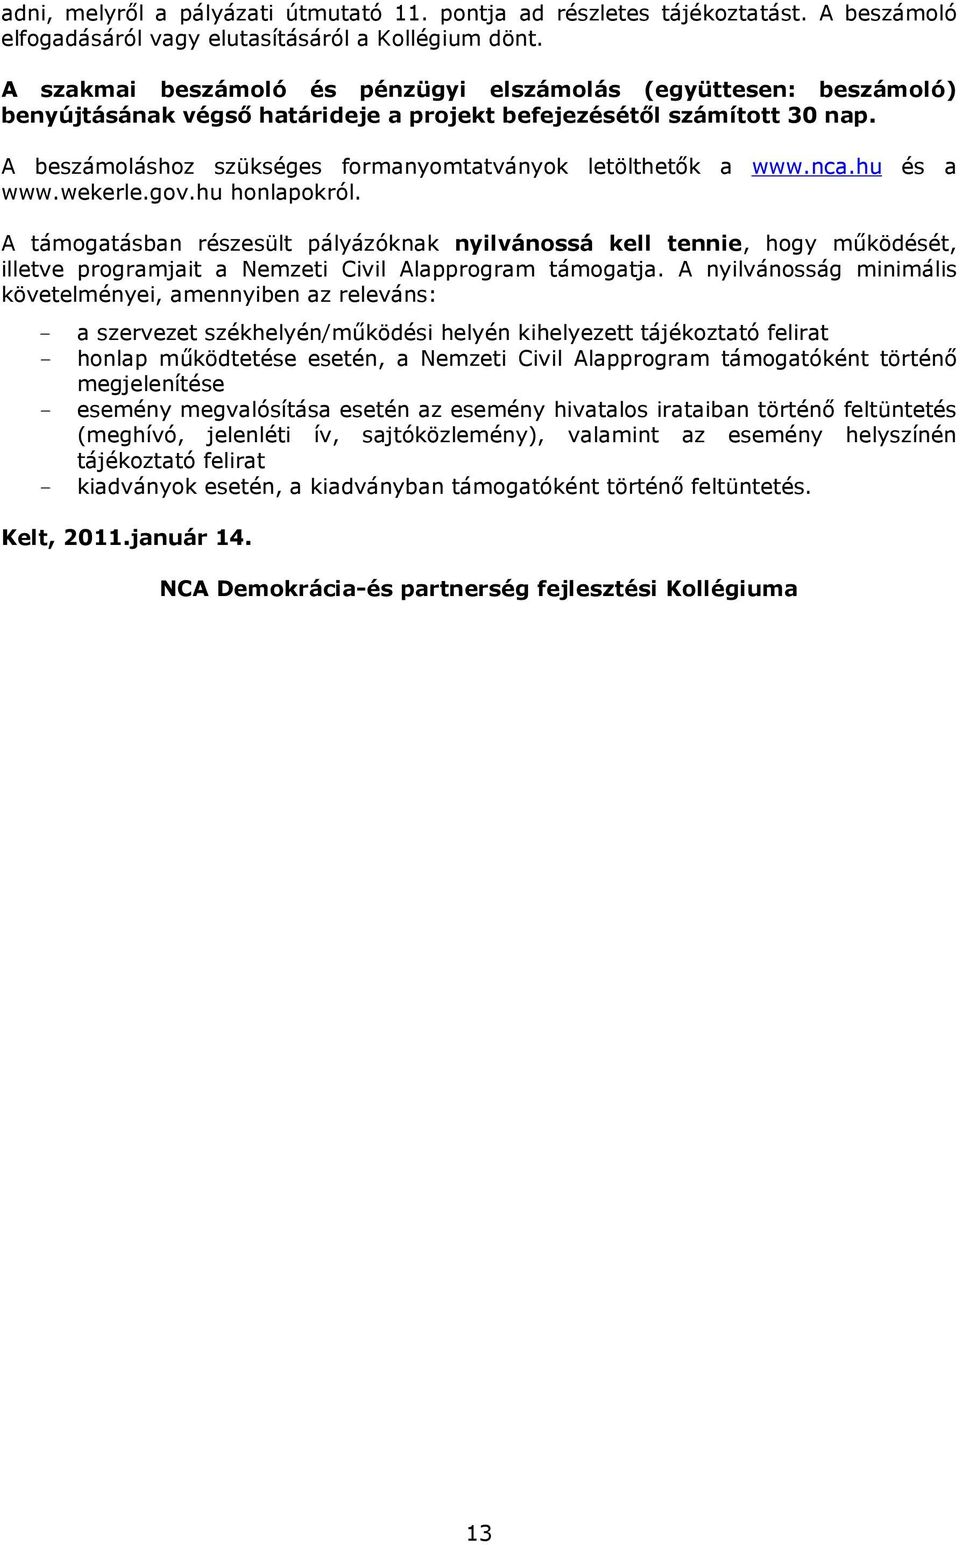 A beszámoláshoz szükséges formanyomtatványok letölthetık a www.nca.hu és a www.wekerle.gov.hu honlapokról.